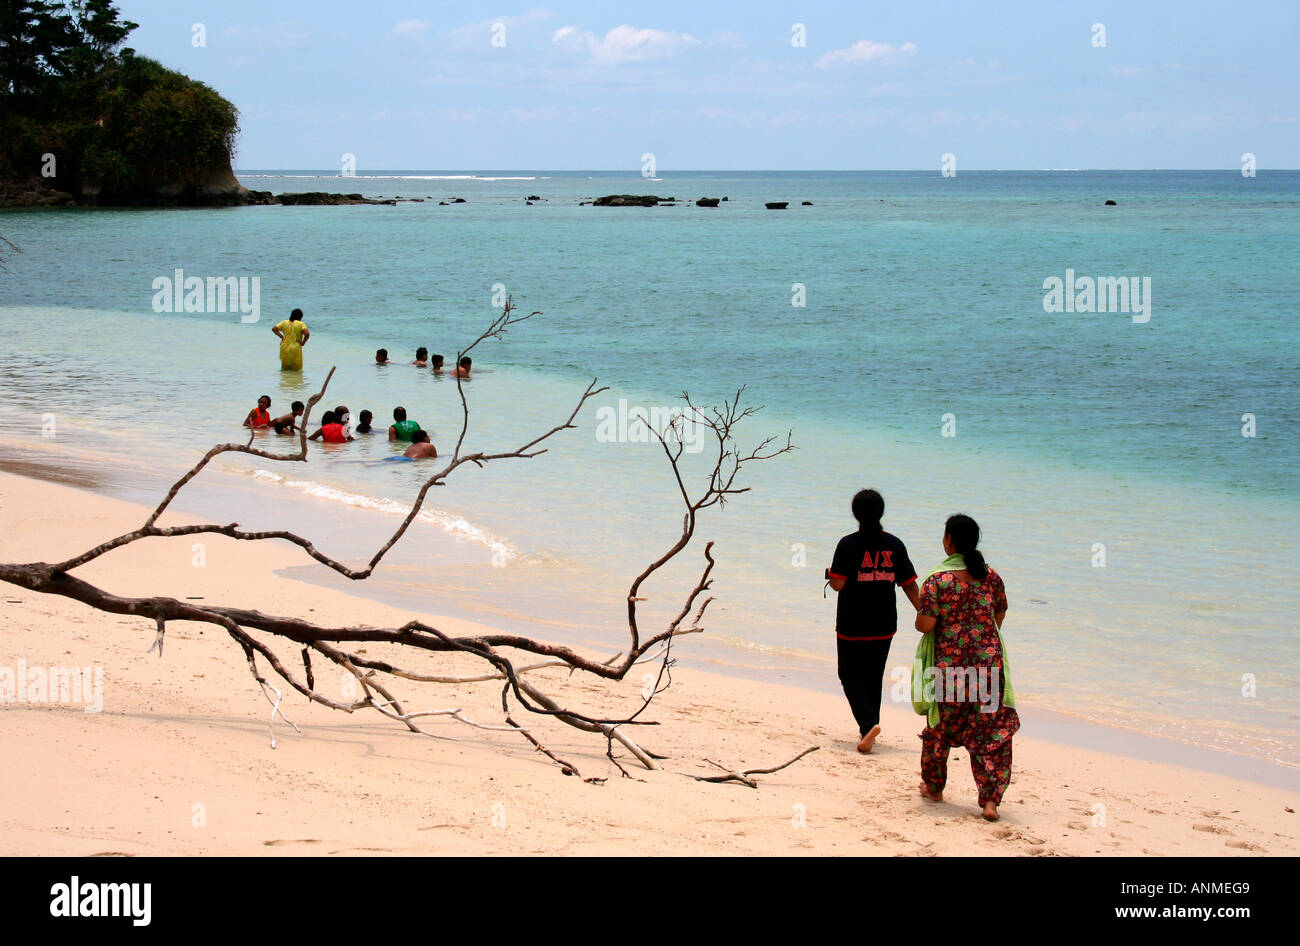 Deshojado las ramas de un árbol caído después del tsunami en el fondo del mar con bañistas en Jolly boya playa en Andam Foto de stock